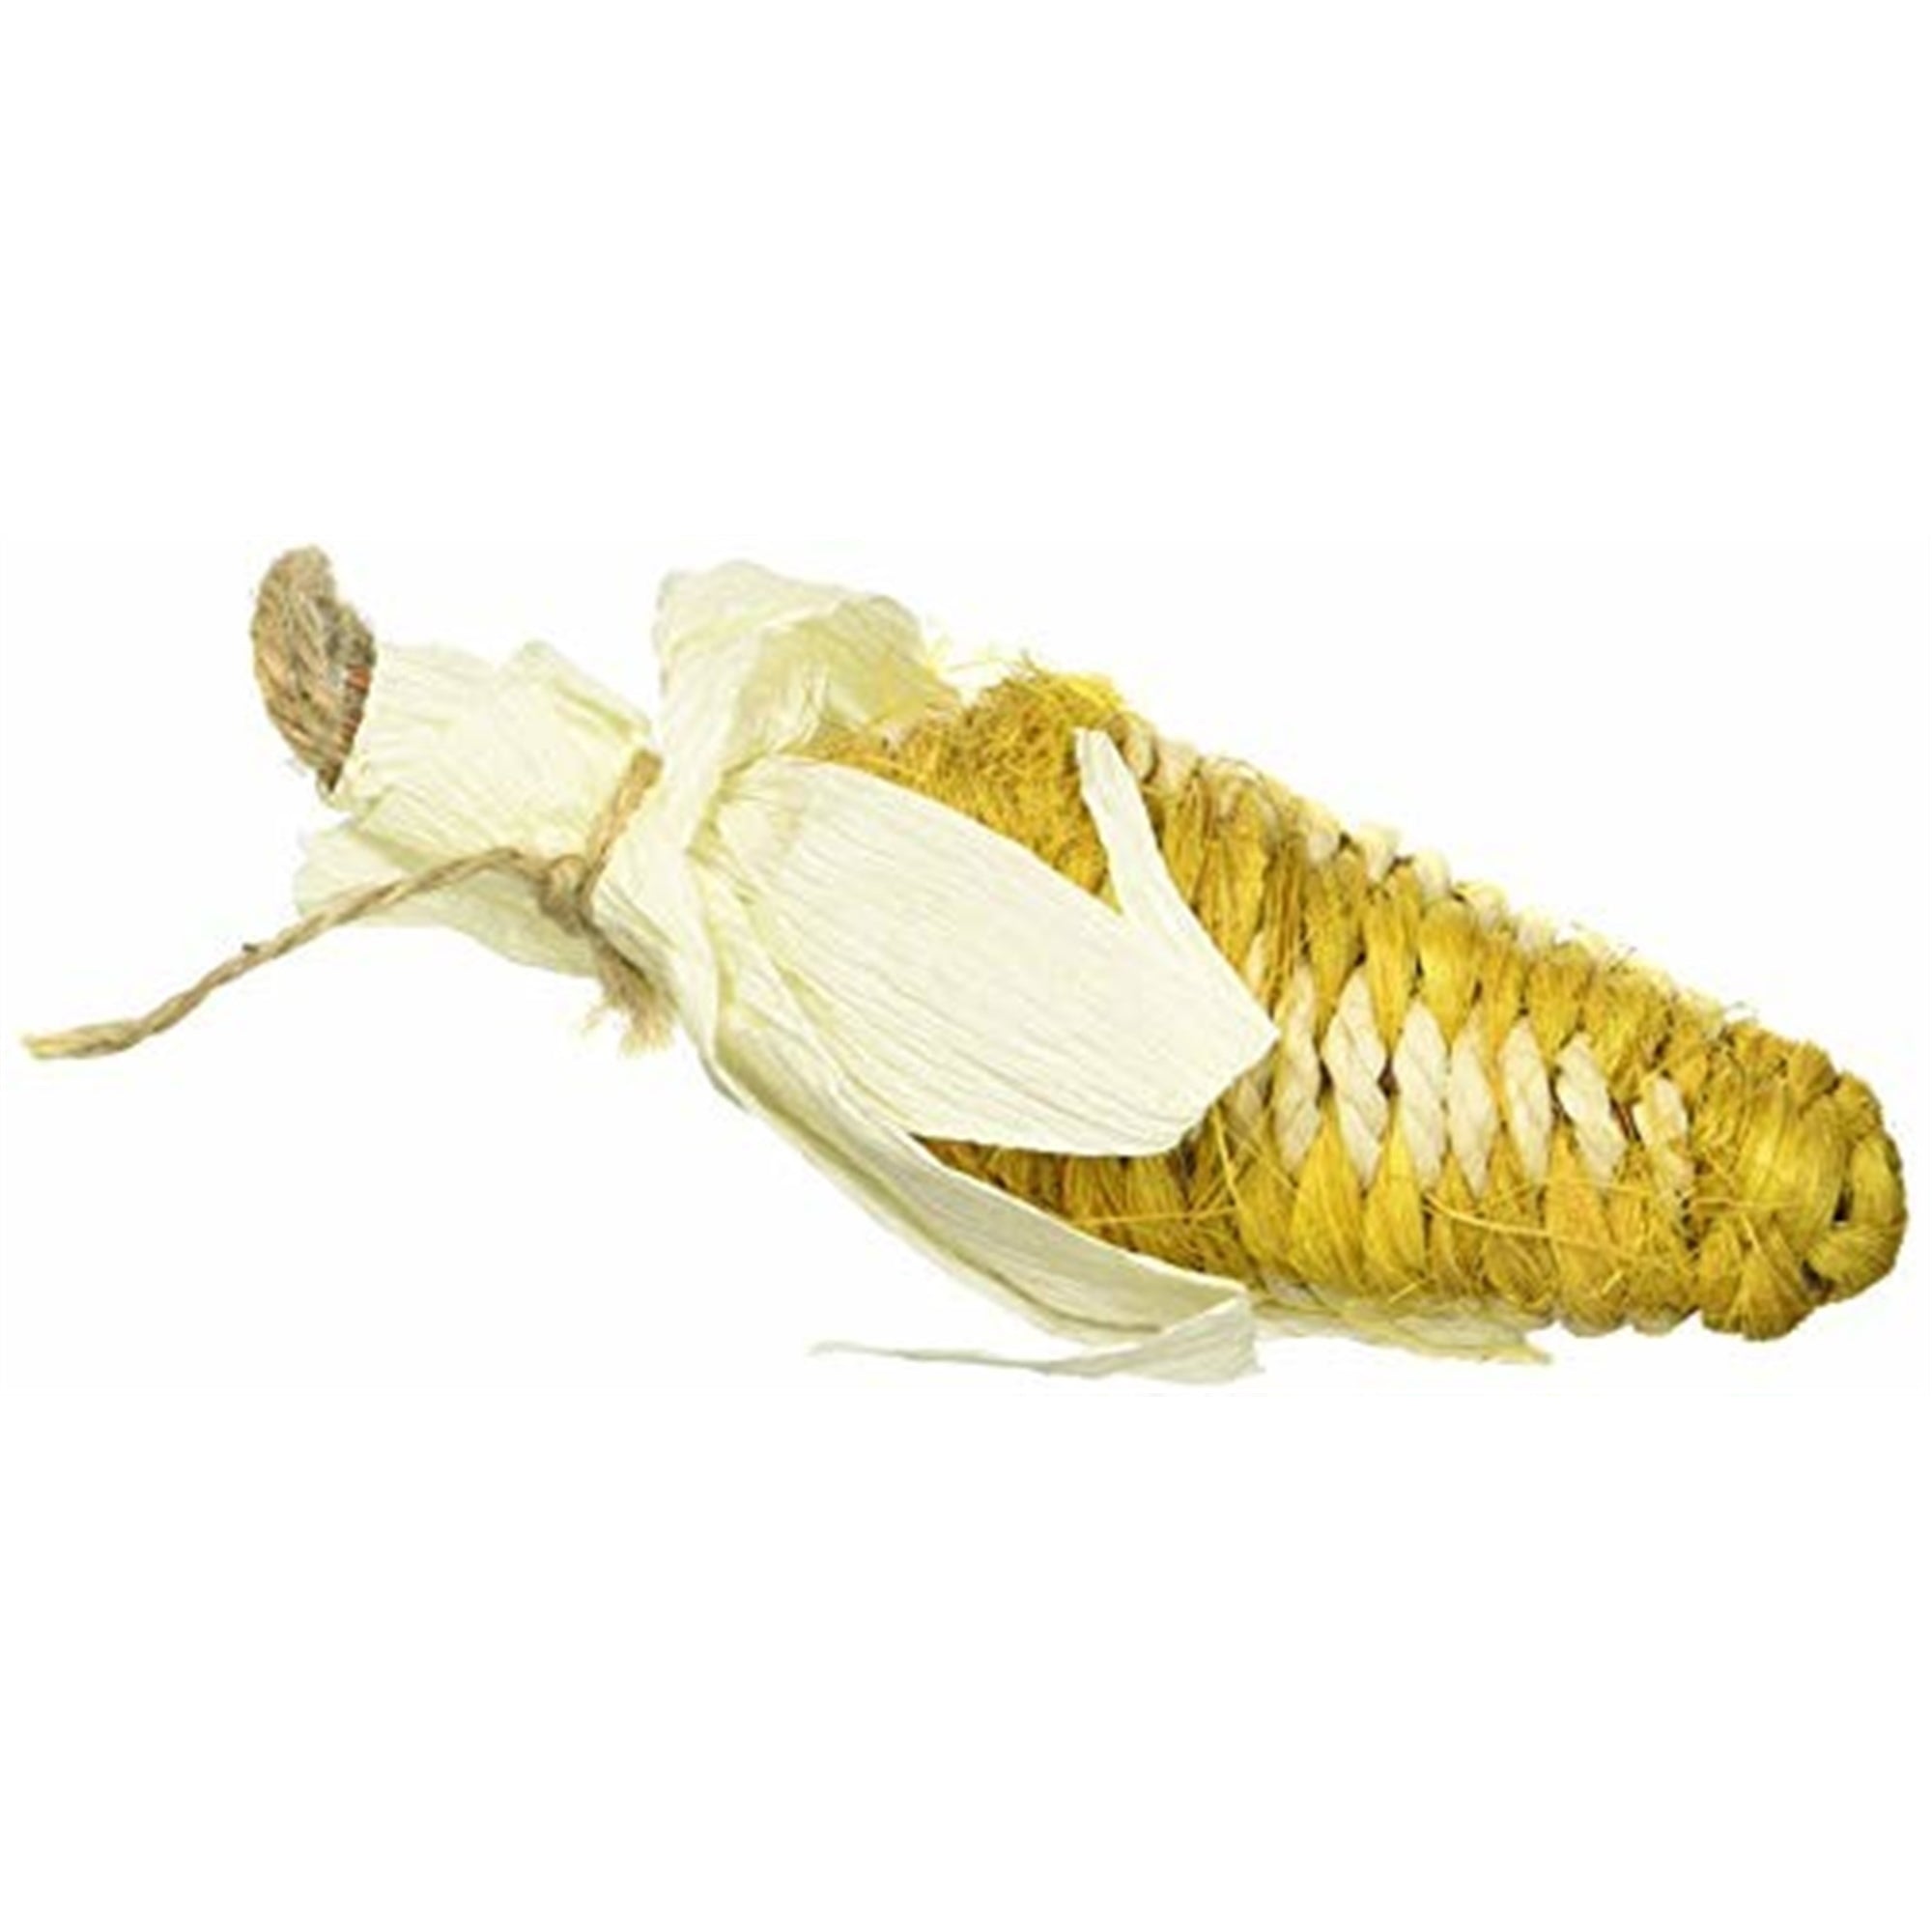 Ware Manufacturing Crisp-E-Corn Corn Husk Chew Toy, Small Animal 10"